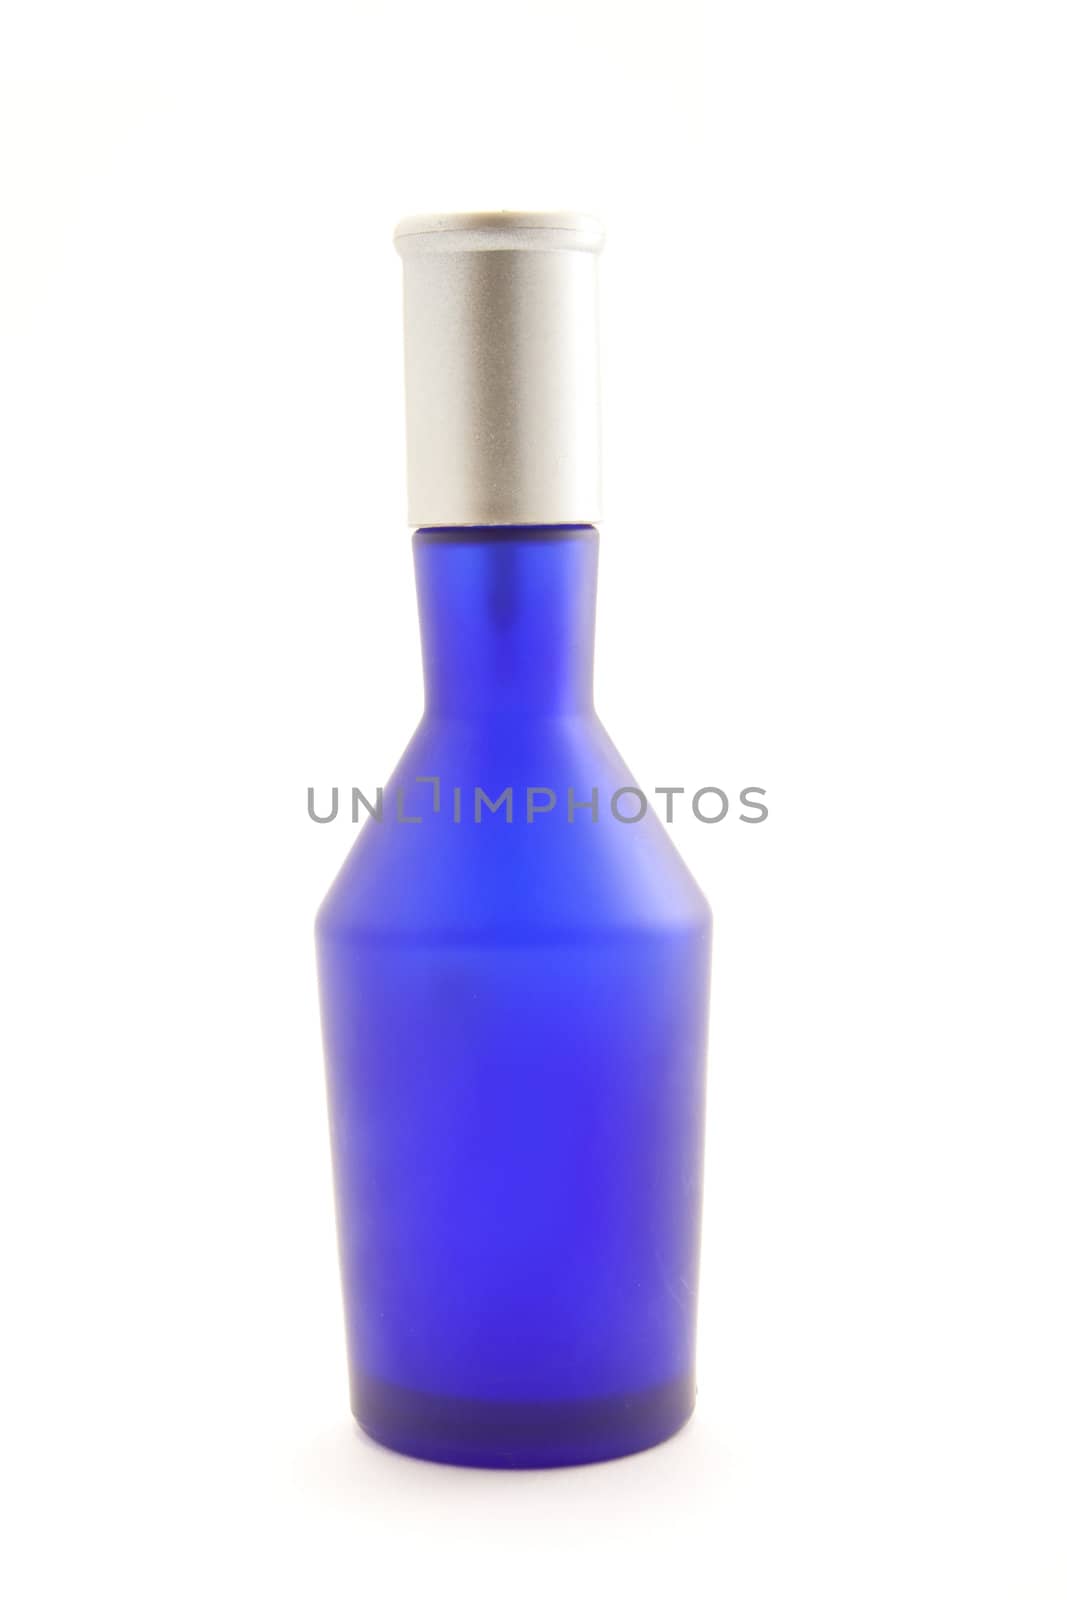 Blue bottle isolated on white background